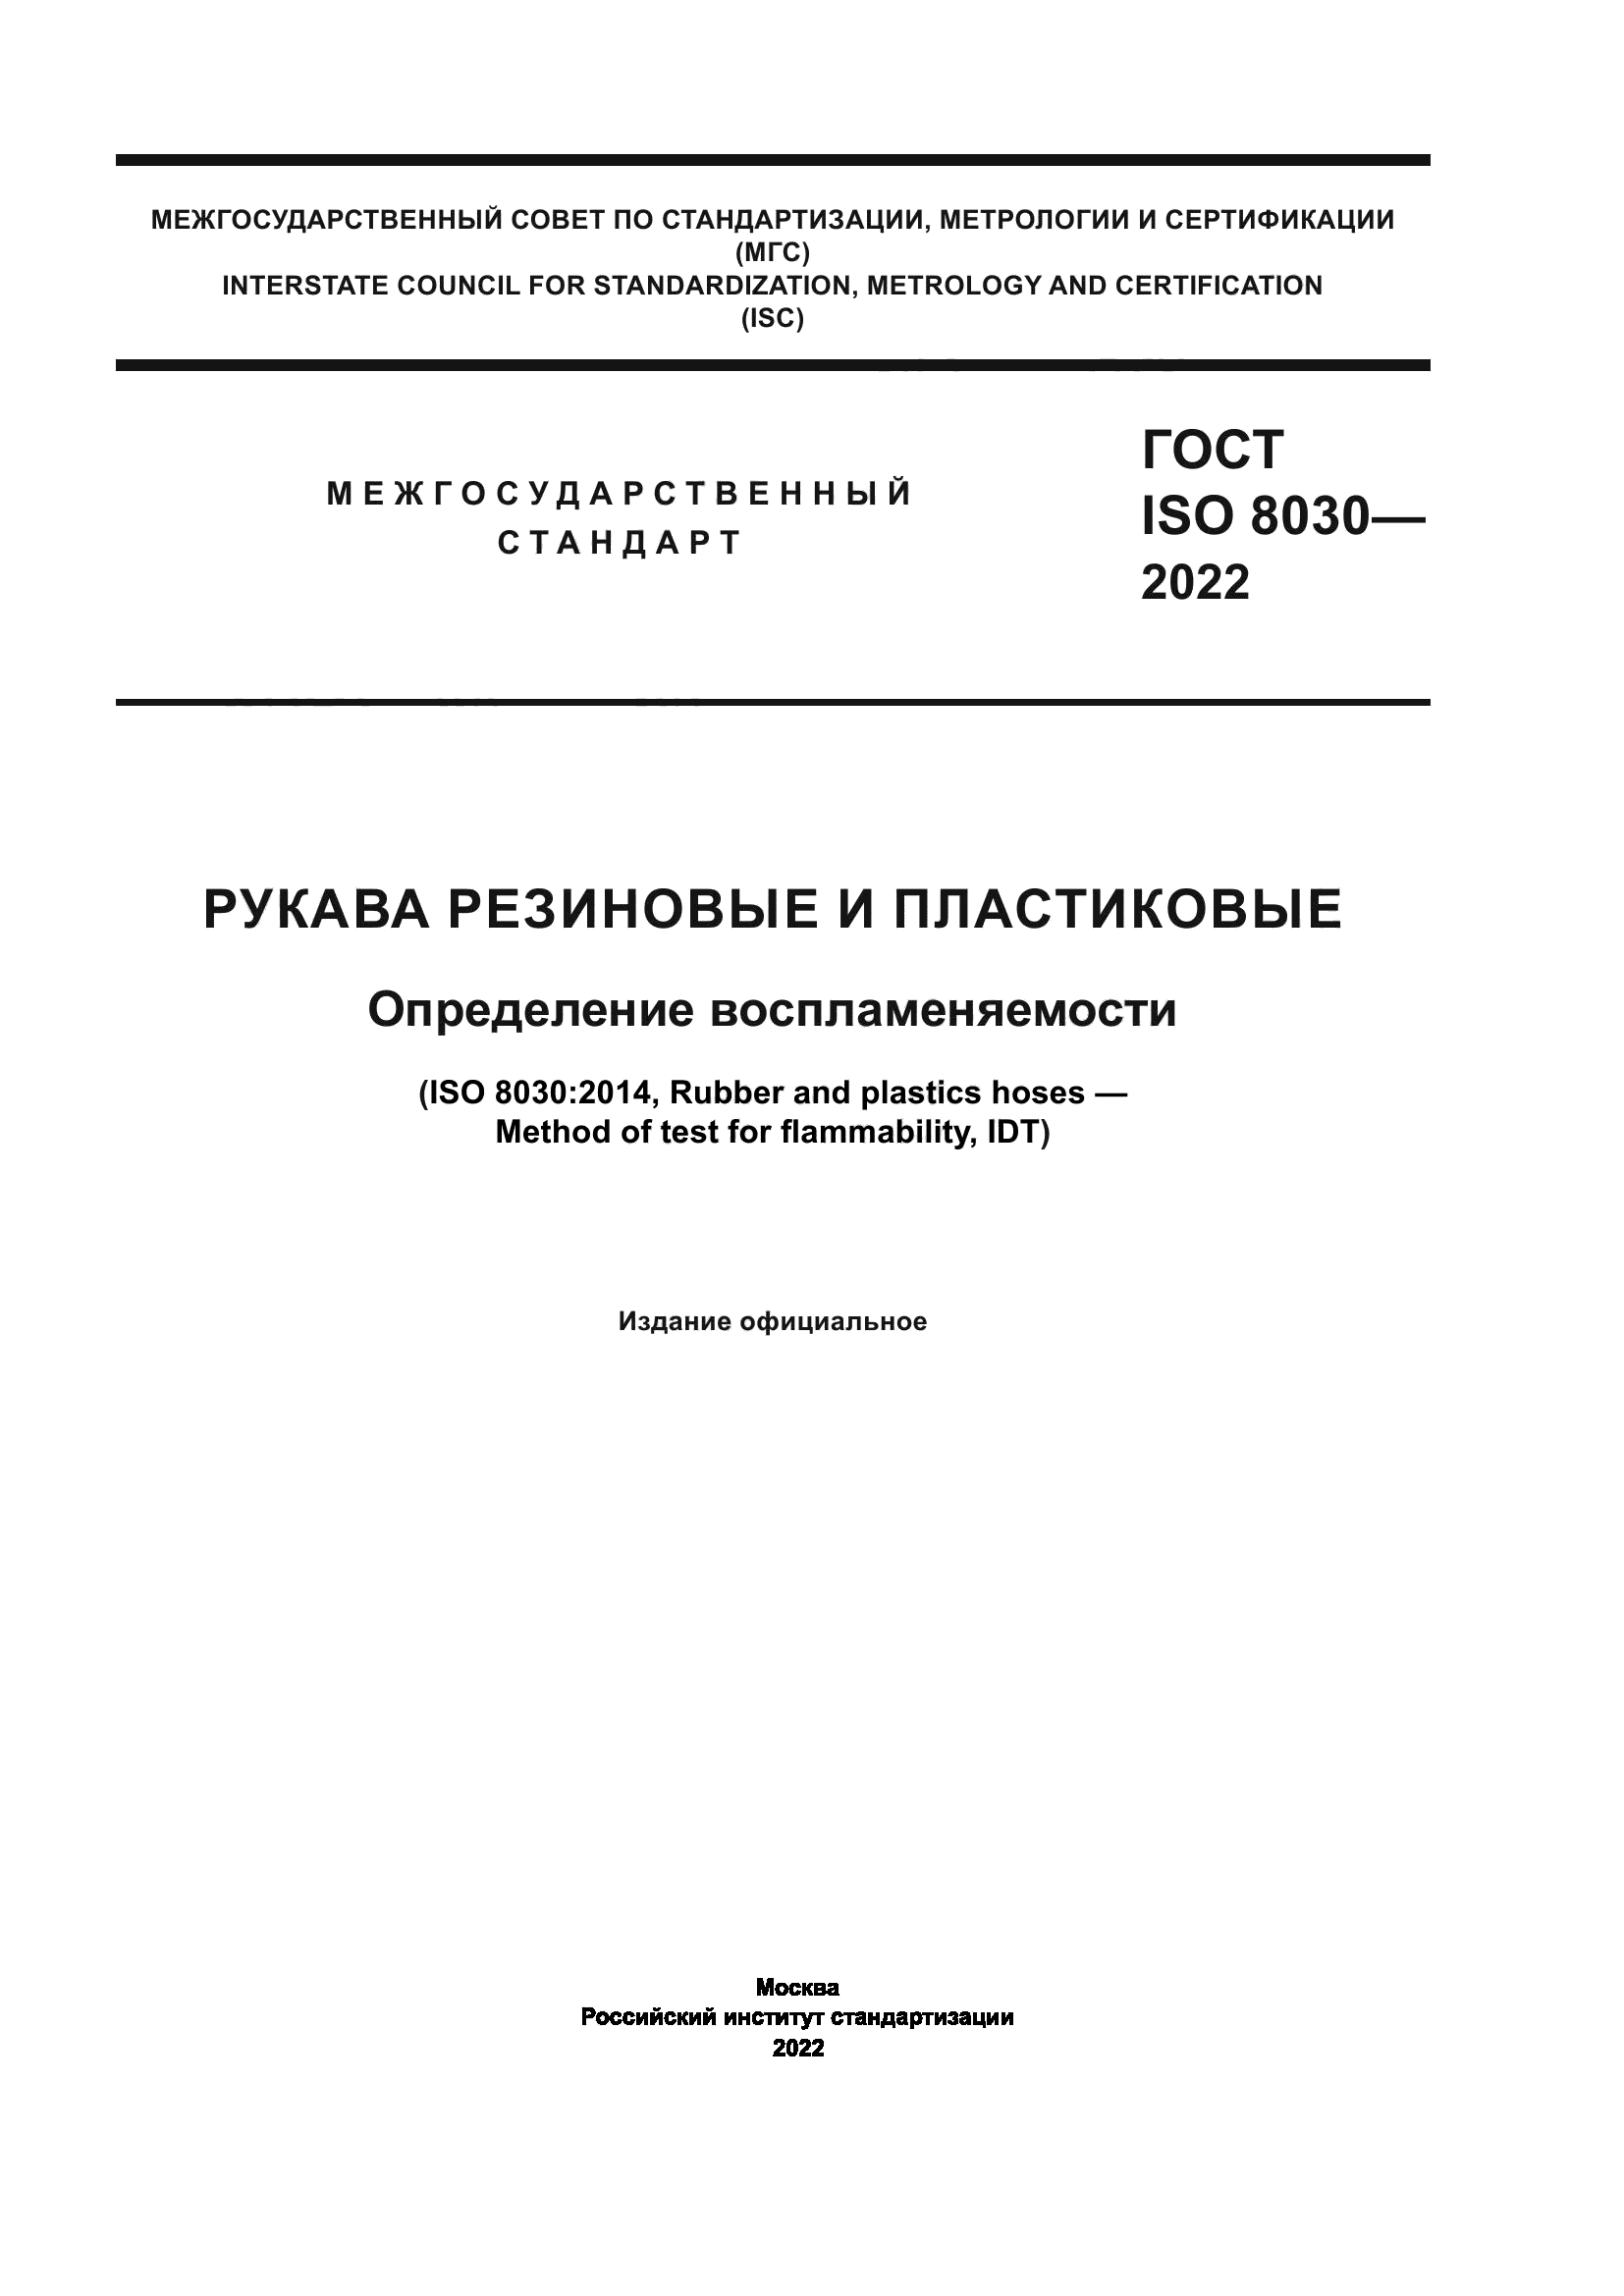 ГОСТ ISO 8030-2022